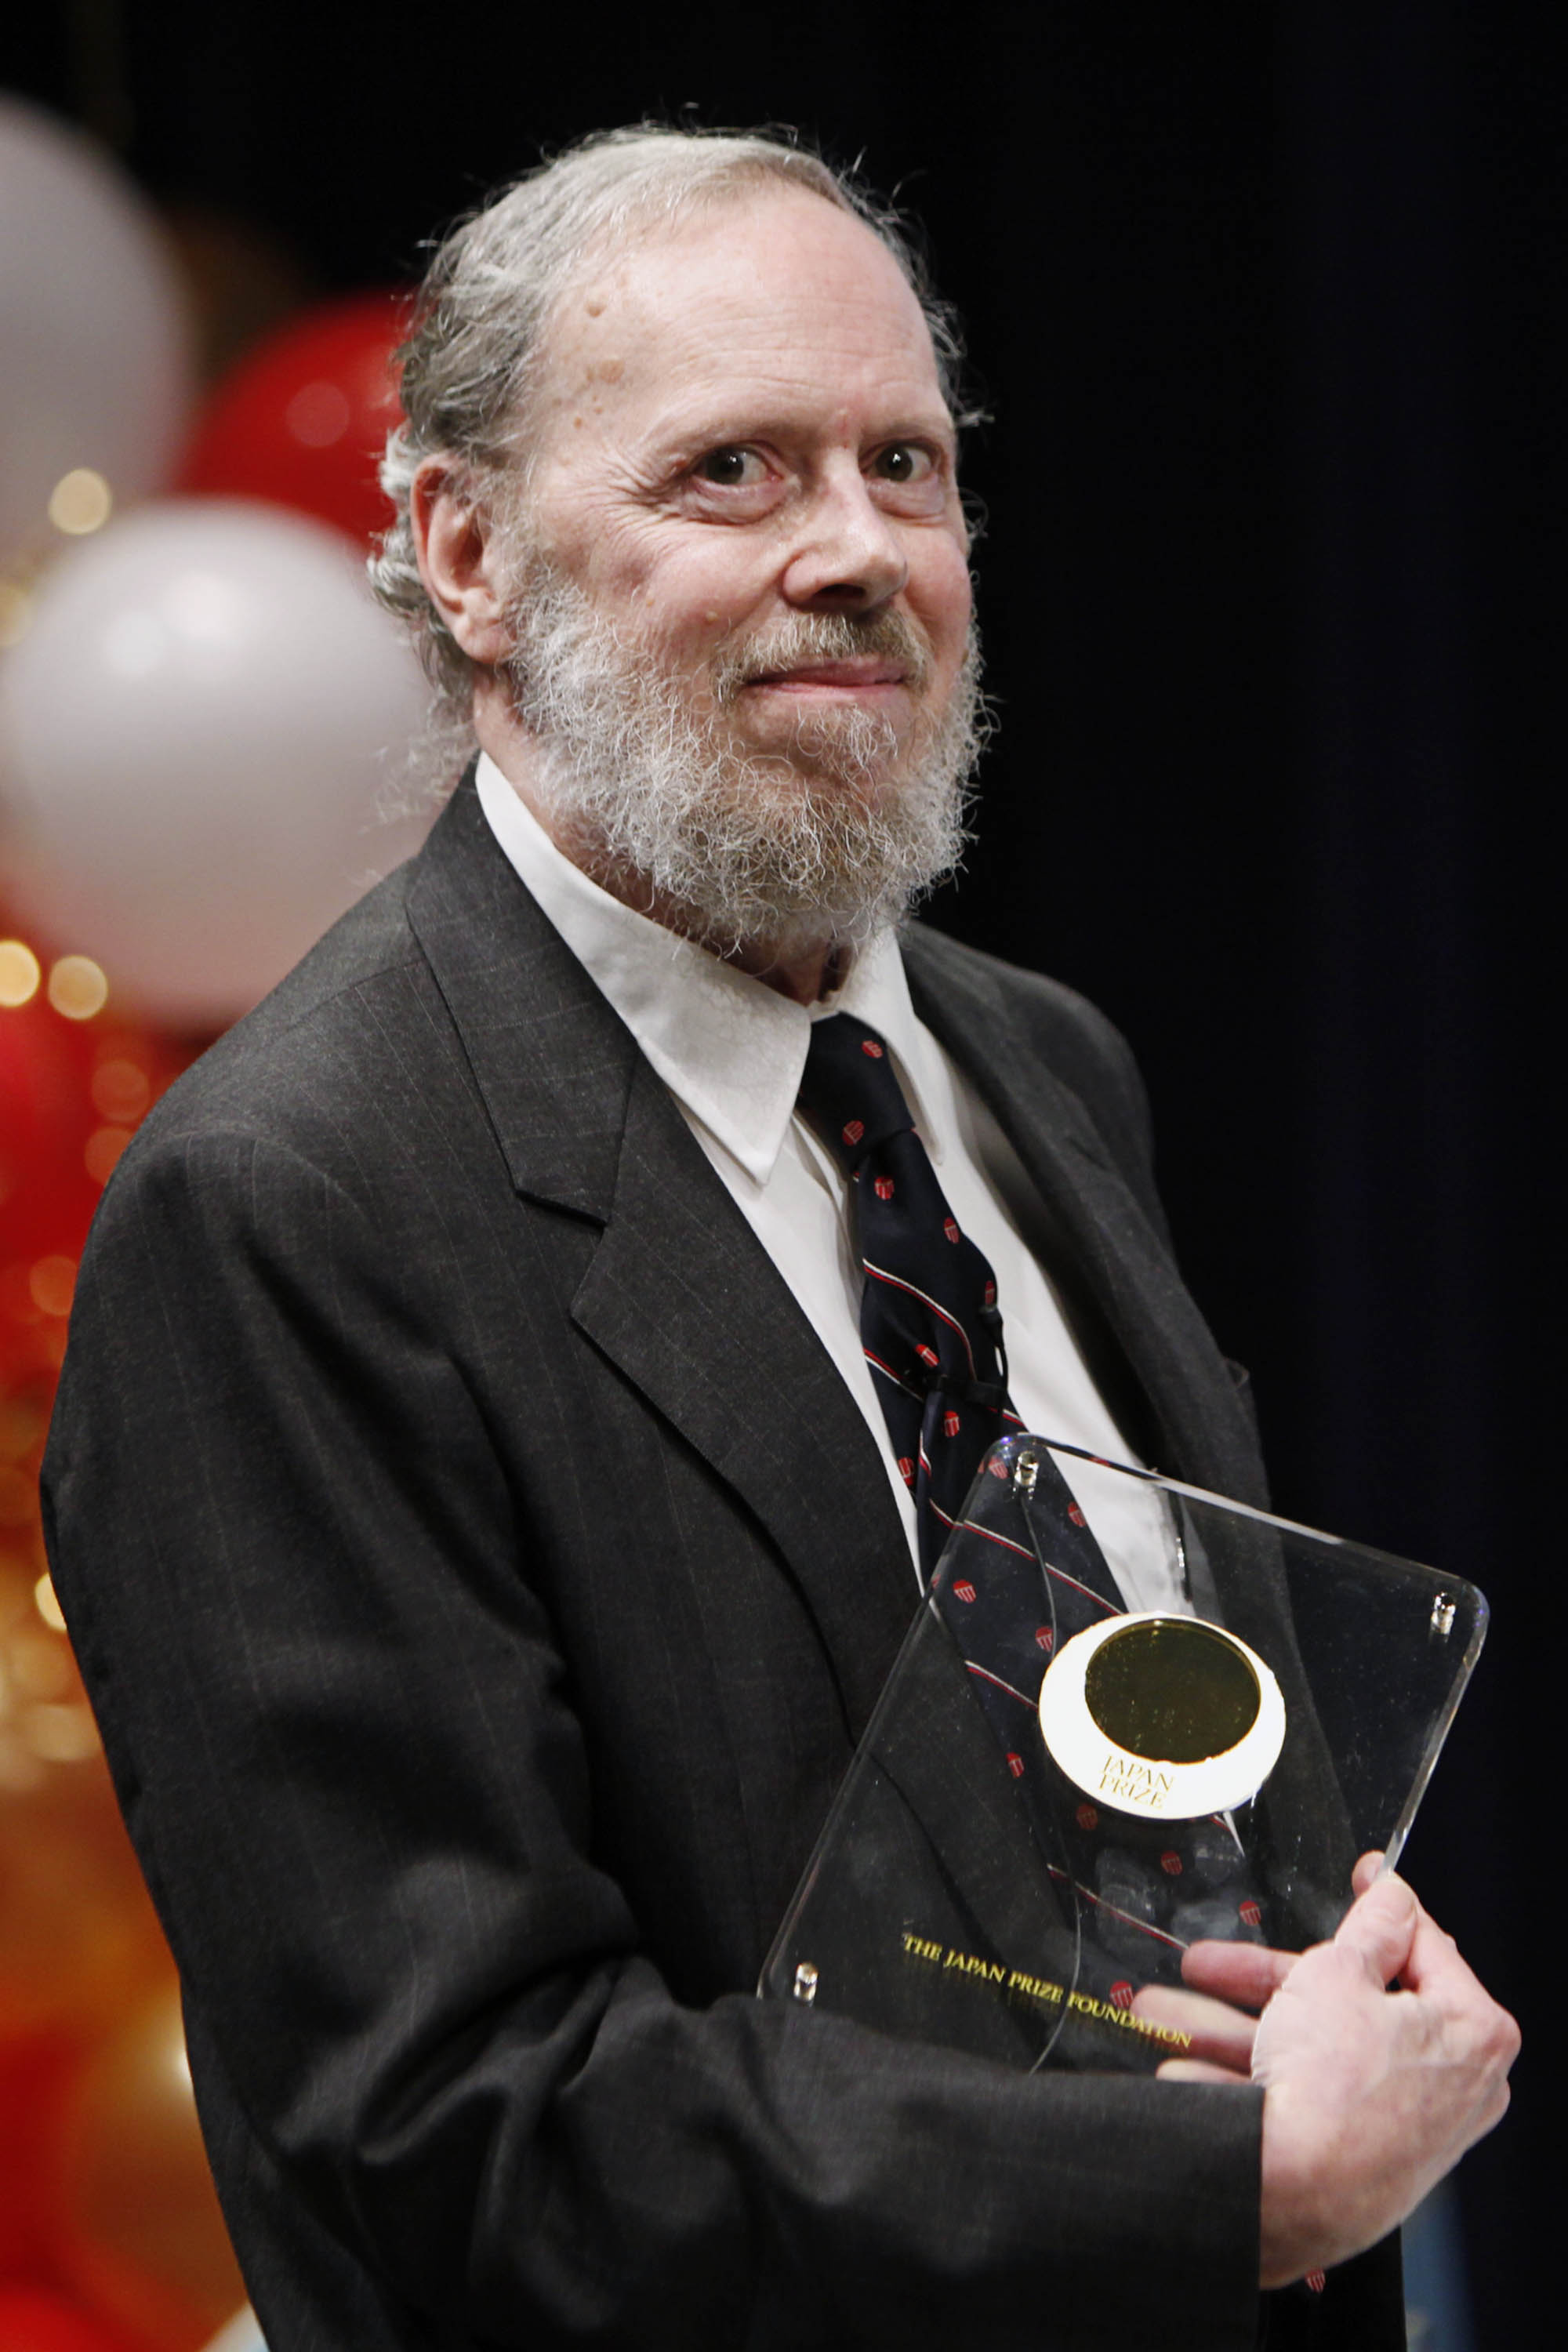 Dennis Ritchie Quotes. QuotesGram